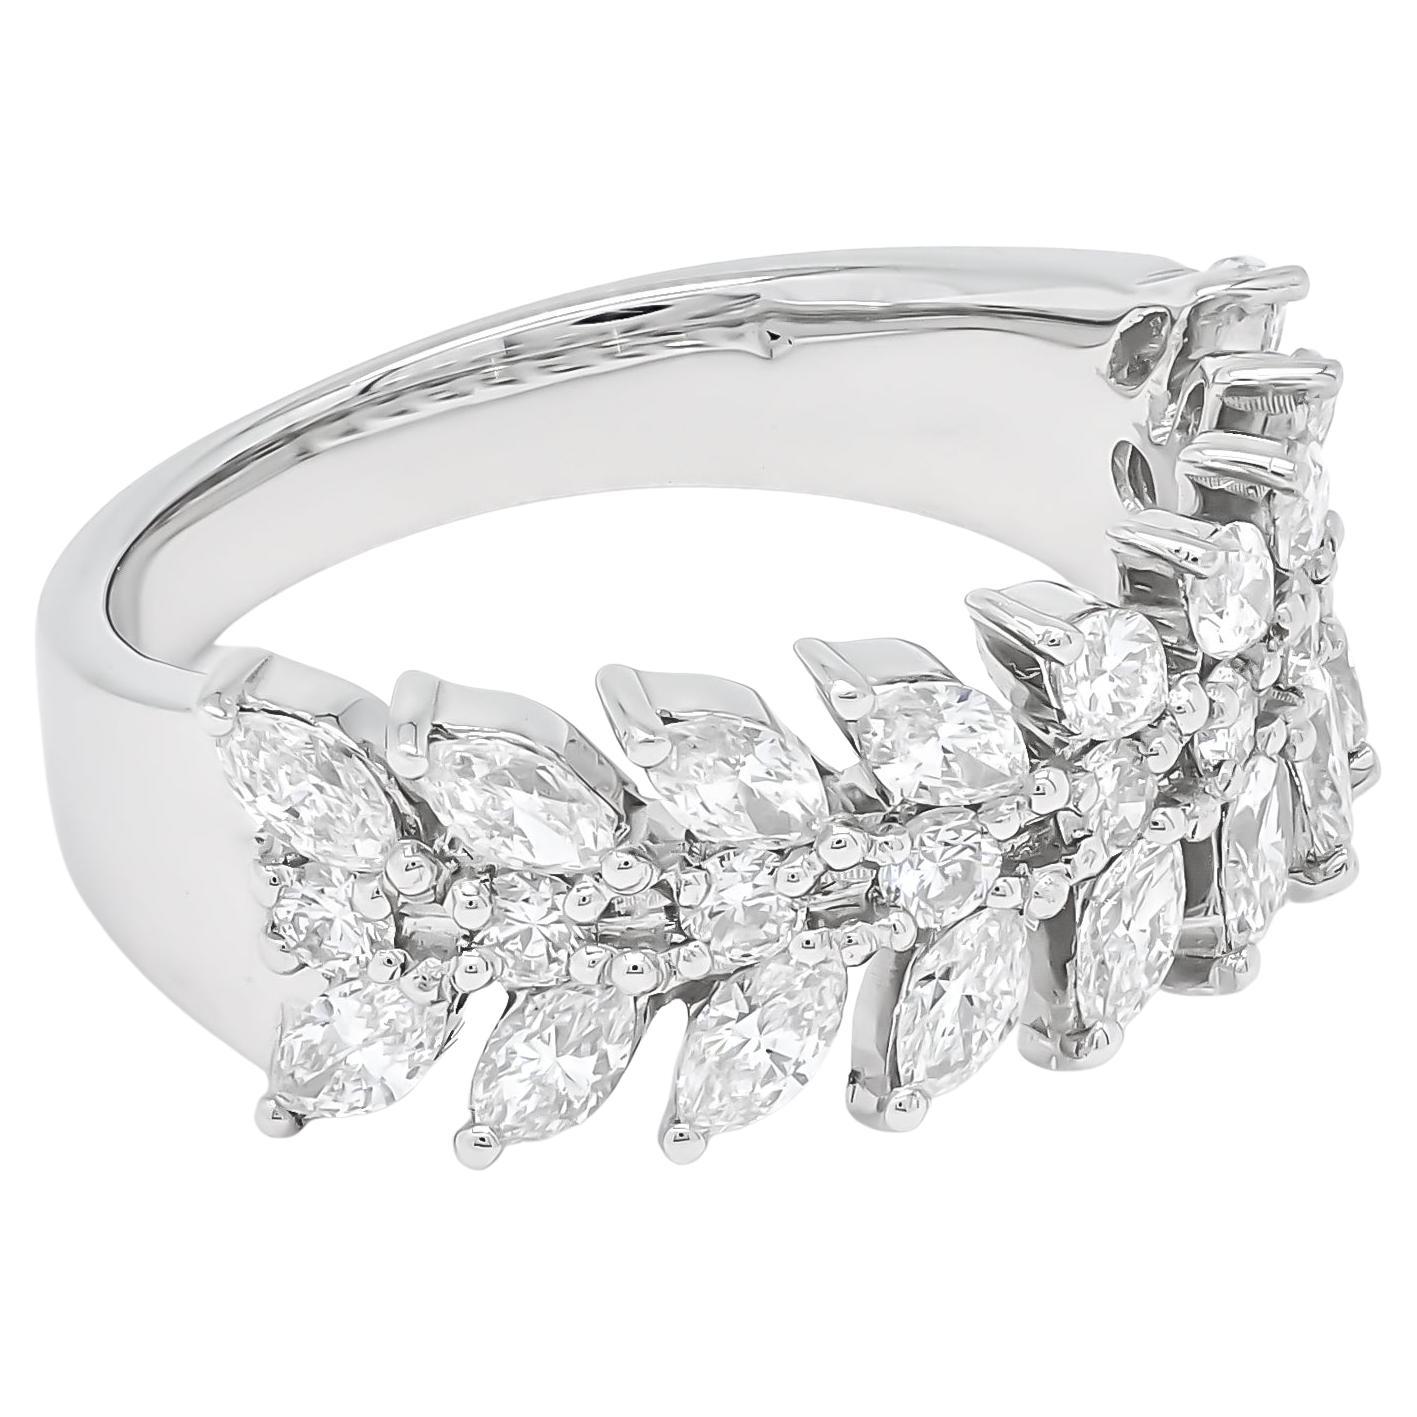 Wenn Sie auf der Suche nach dem perfekten Geschenk zum Jahrestag sind, um Ihre Frau zu überraschen und ihr zu zeigen, wie sehr Sie sie lieben, sollten Sie einen Marquise-Diamantring aus 18-karätigem Weißgold in Betracht ziehen. Dieses exquisite